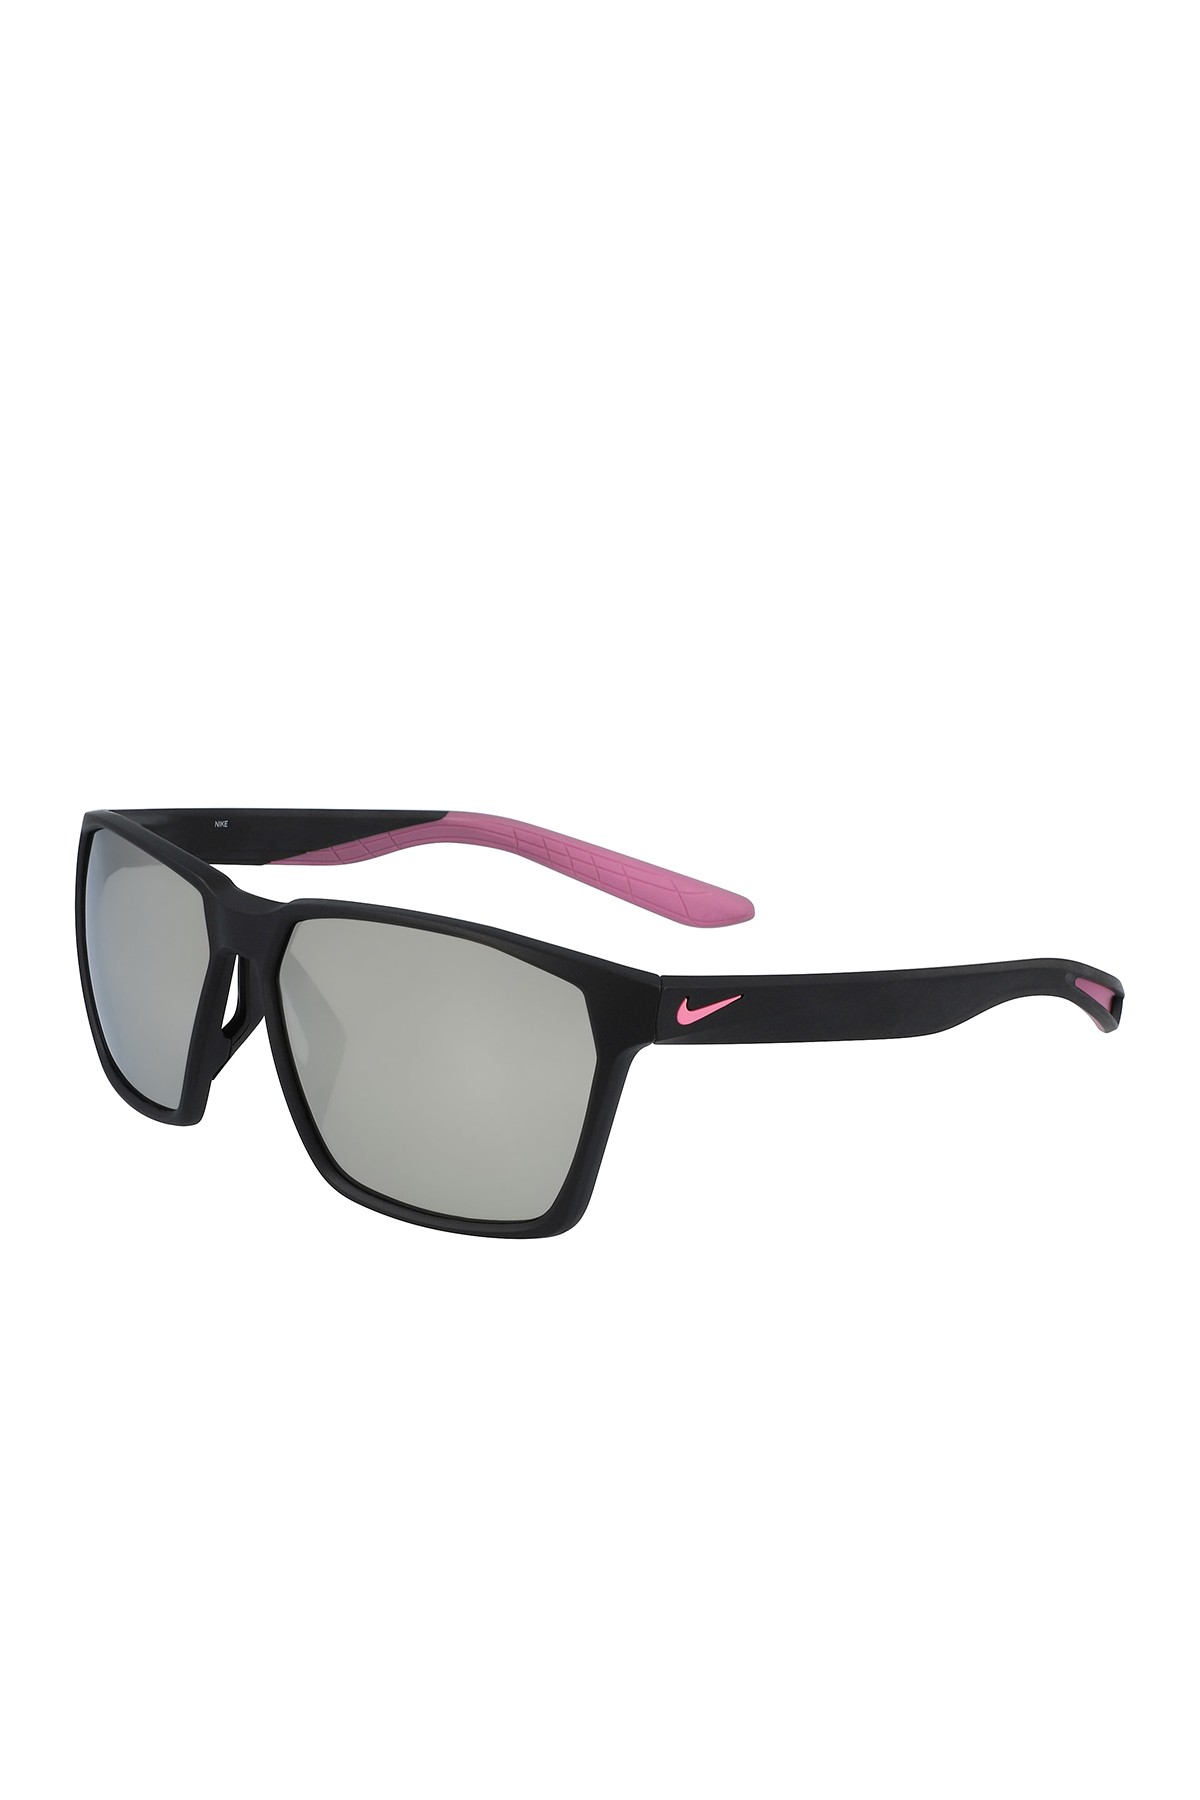 Maverick E 59mm Вентилируемые квадратные солнцезащитные очки Nike